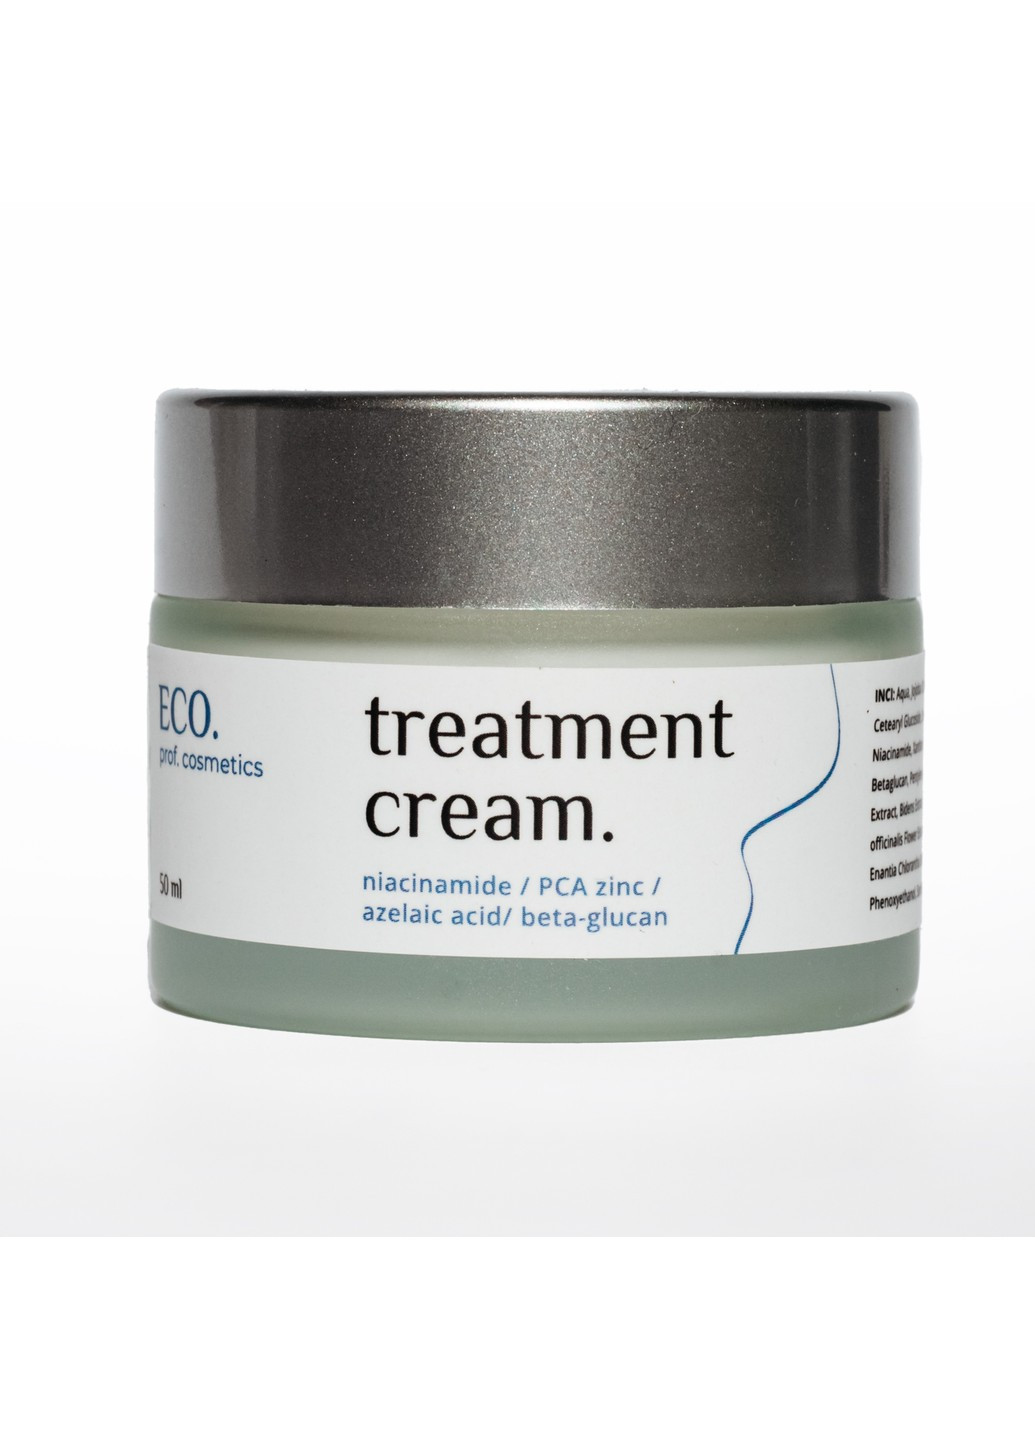 Ламелярний лікувальний крем для жирної та комбінованої шкіри Treatment cream 50 мл Eco.prof.cosmetics (254177405)